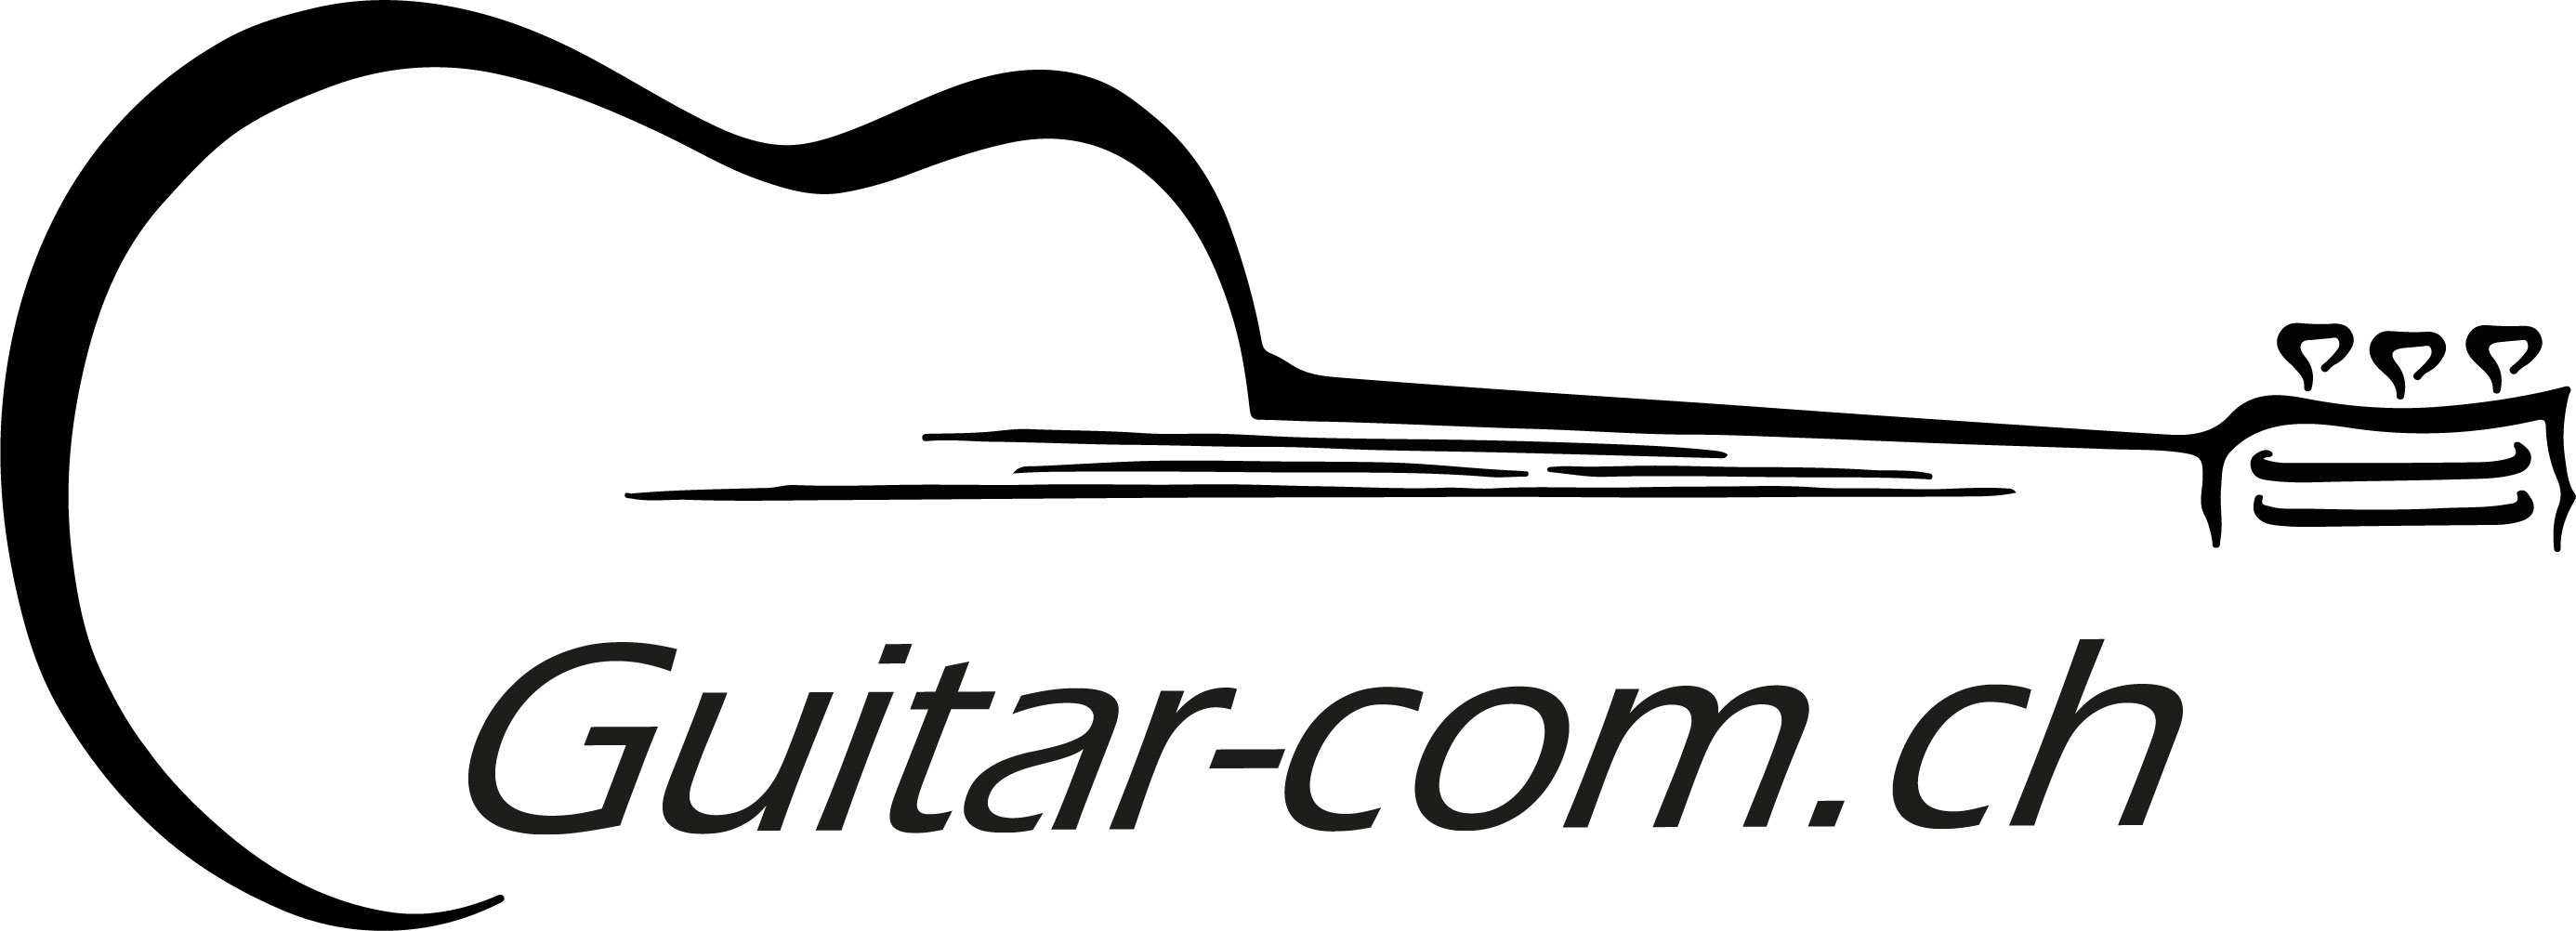 Guitar_com_querjpg